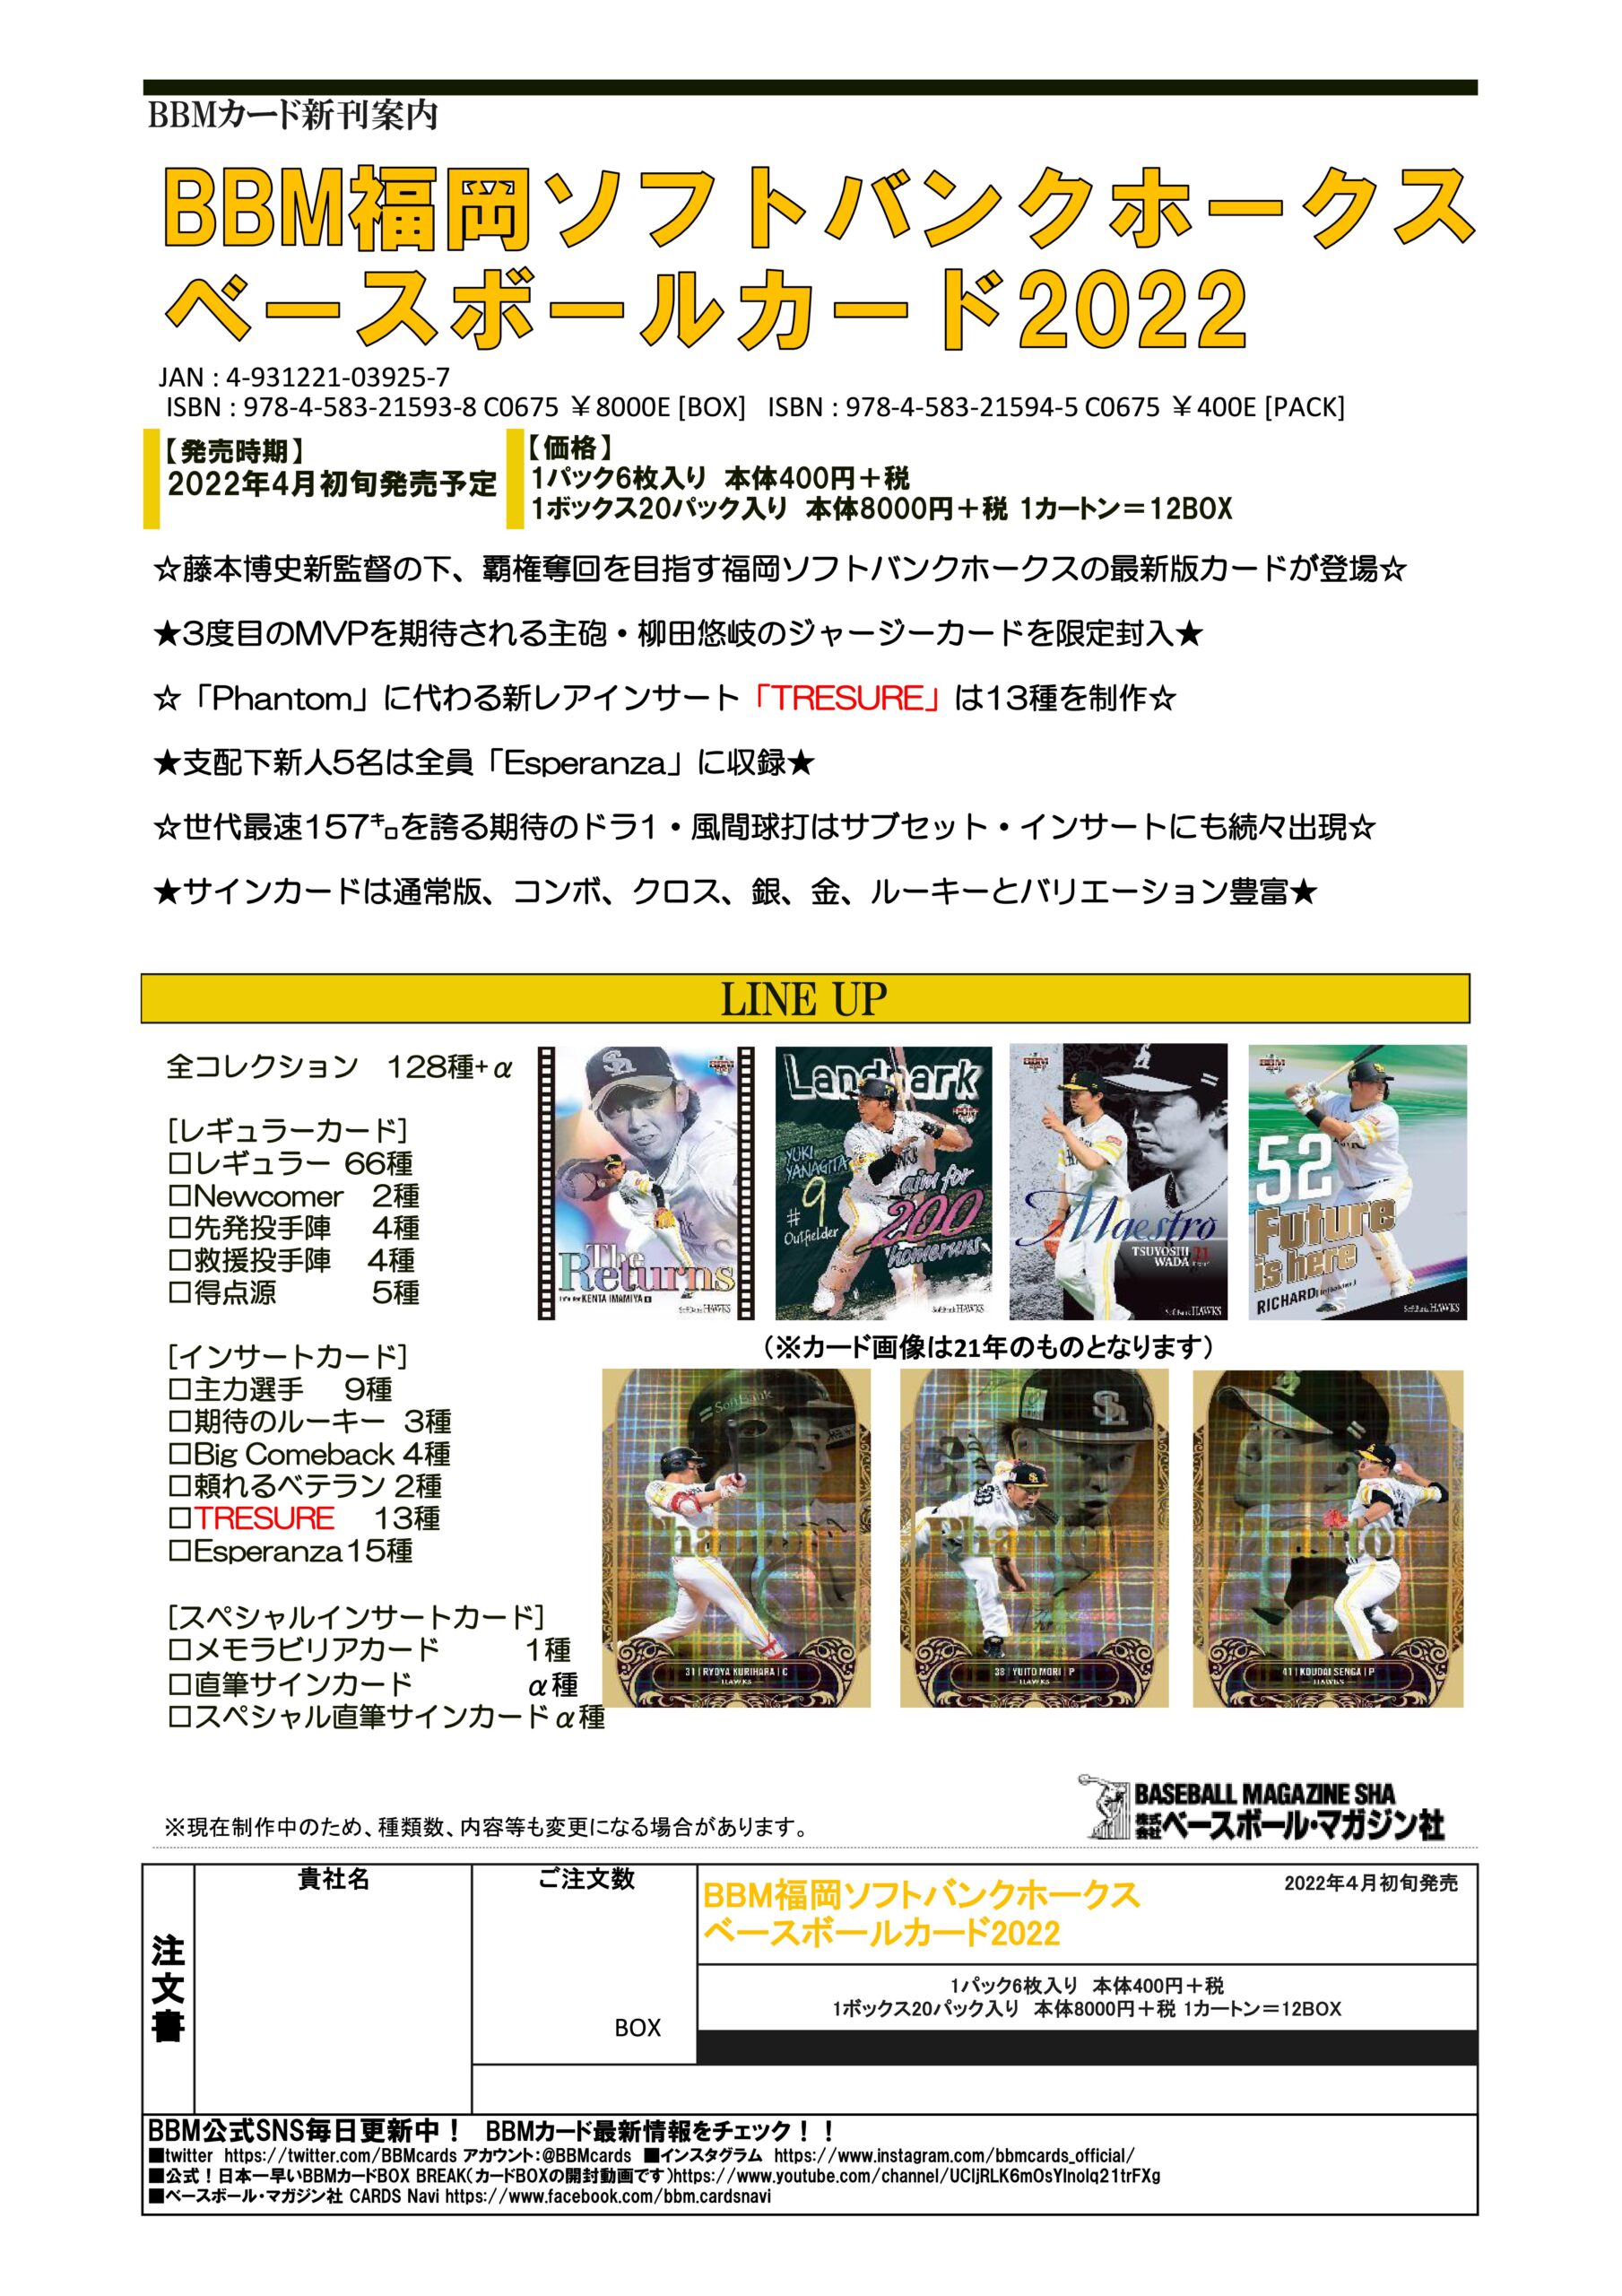 ⚾ BBM 福岡ソフトバンクホークス ベースボールカード 2022 【製品情報 